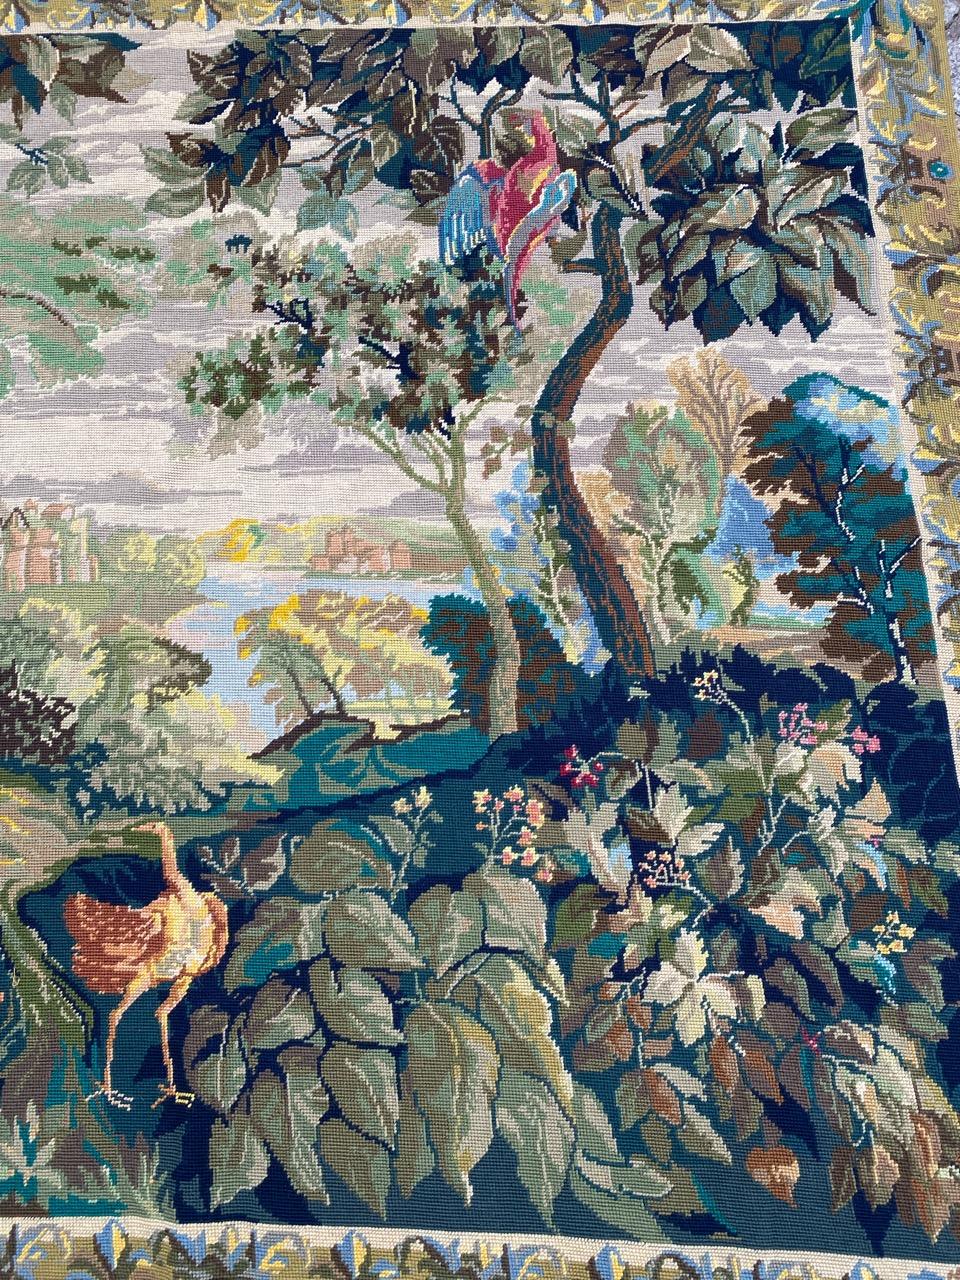 Exquisiter französischer Wandteppich mit einem herrlichen Gartenmotiv mit Vögeln und leuchtenden Farben. Handgestickt im Needlepoint-Verfahren mit hochwertiger Wolle. Ein schönes Kunstwerk, das jeden Raum aufwertet.

✨✨✨
